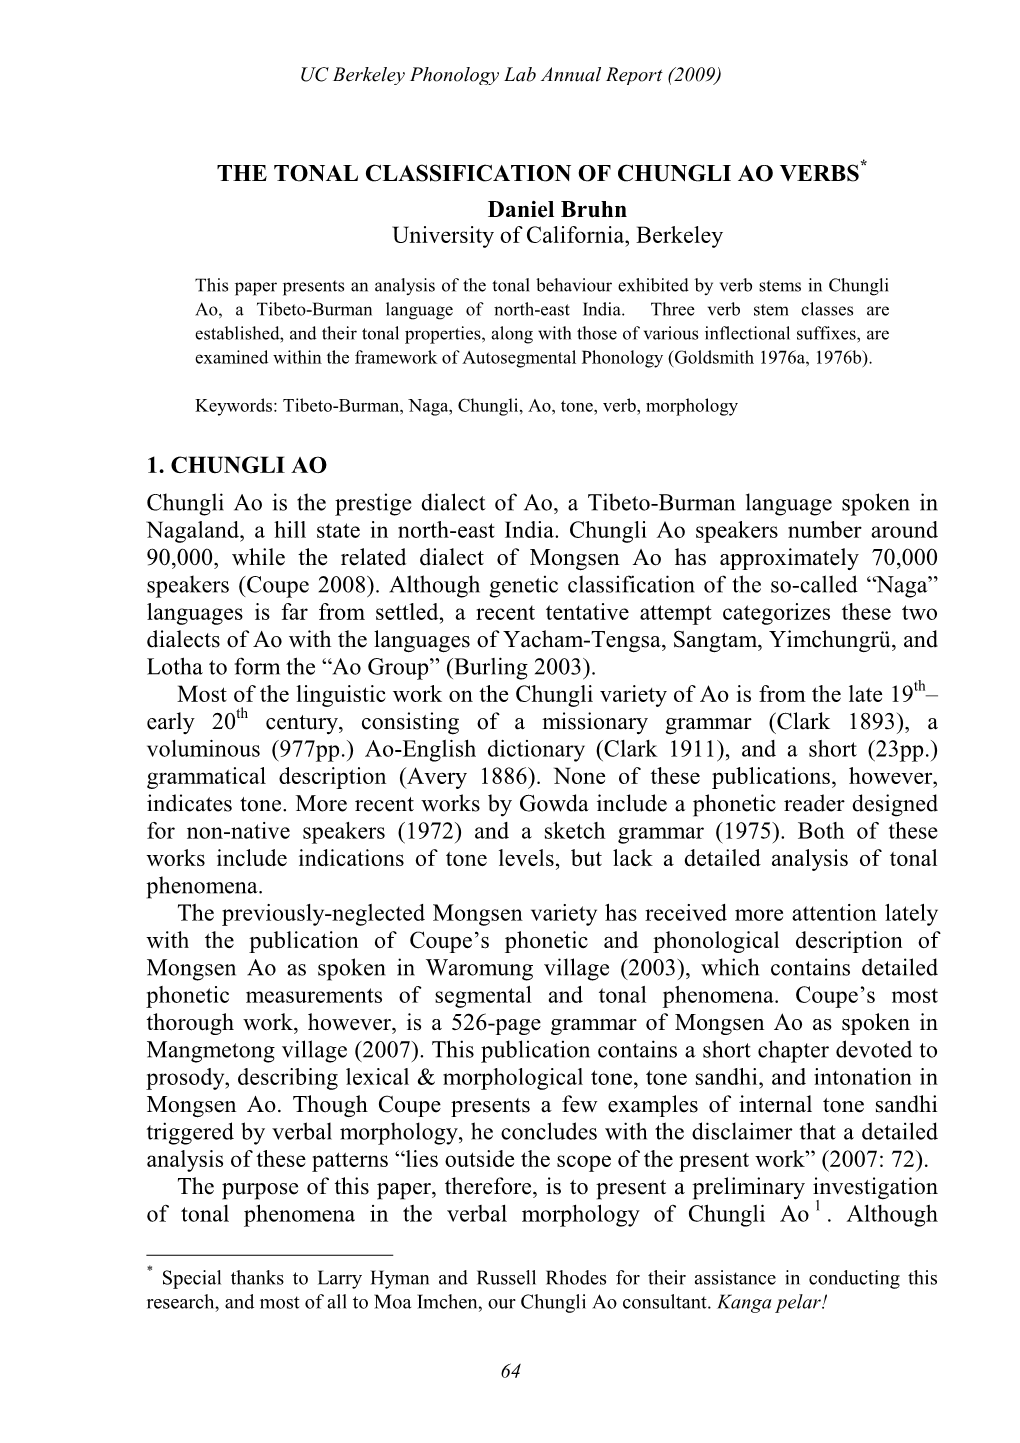 THE TONAL CLASSIFICATION of CHUNGLI AO VERBS* Daniel Bruhn University of California, Berkeley